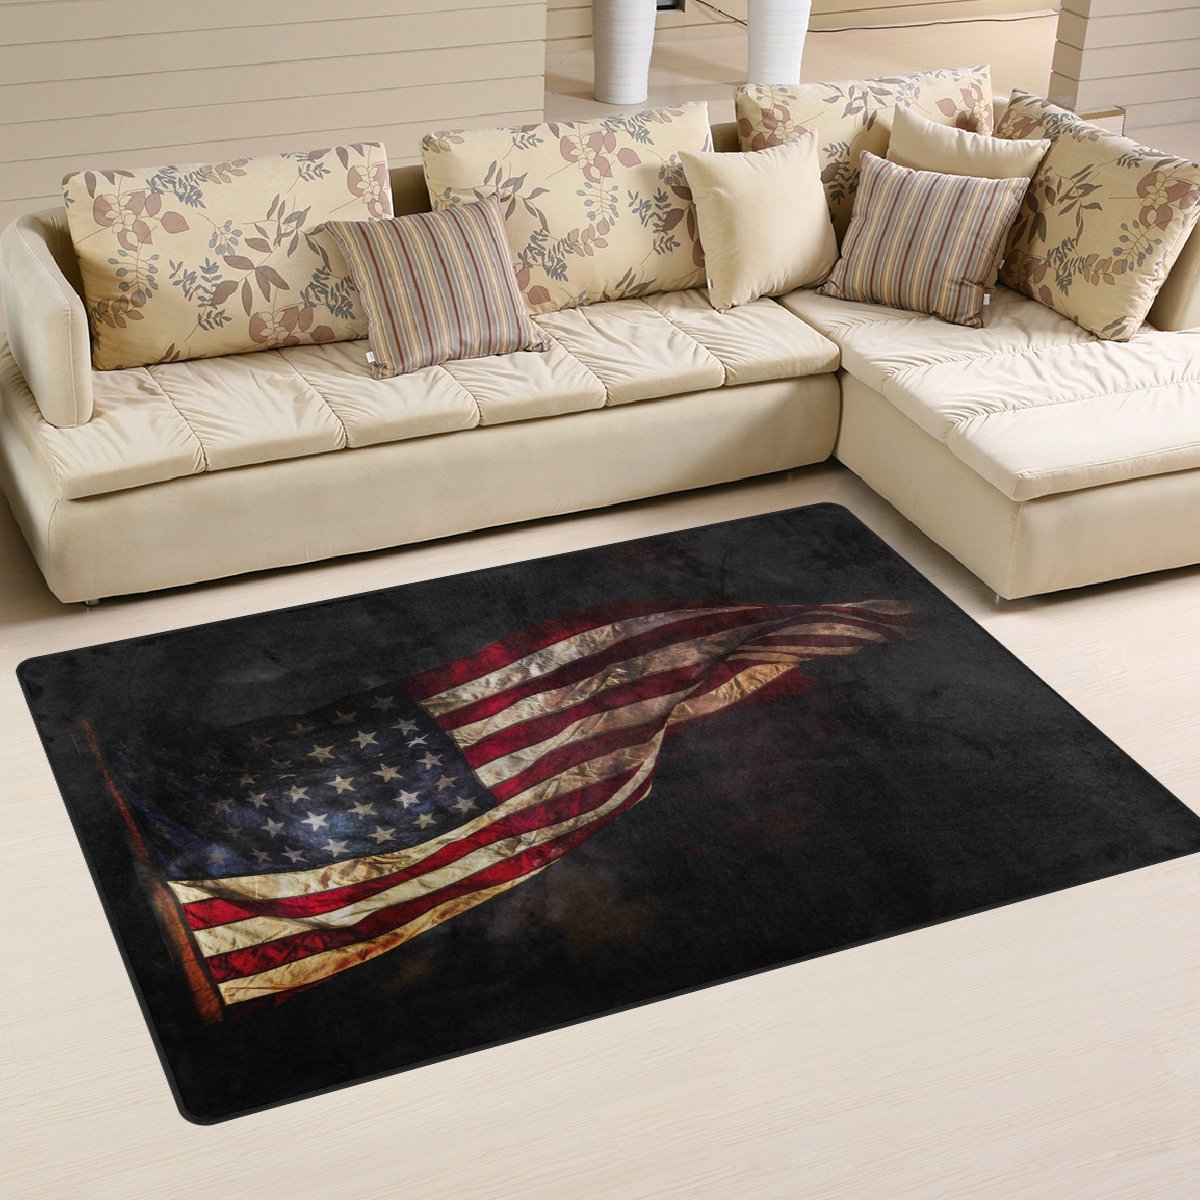 yibaihe, leicht, Bedruckt mit Deko-Teppich, Teppich, modern, amerikanische Flagge und wasserabweisend stoßfest. Für Wohn- und Schlafzimmer, 153 x 100 cm